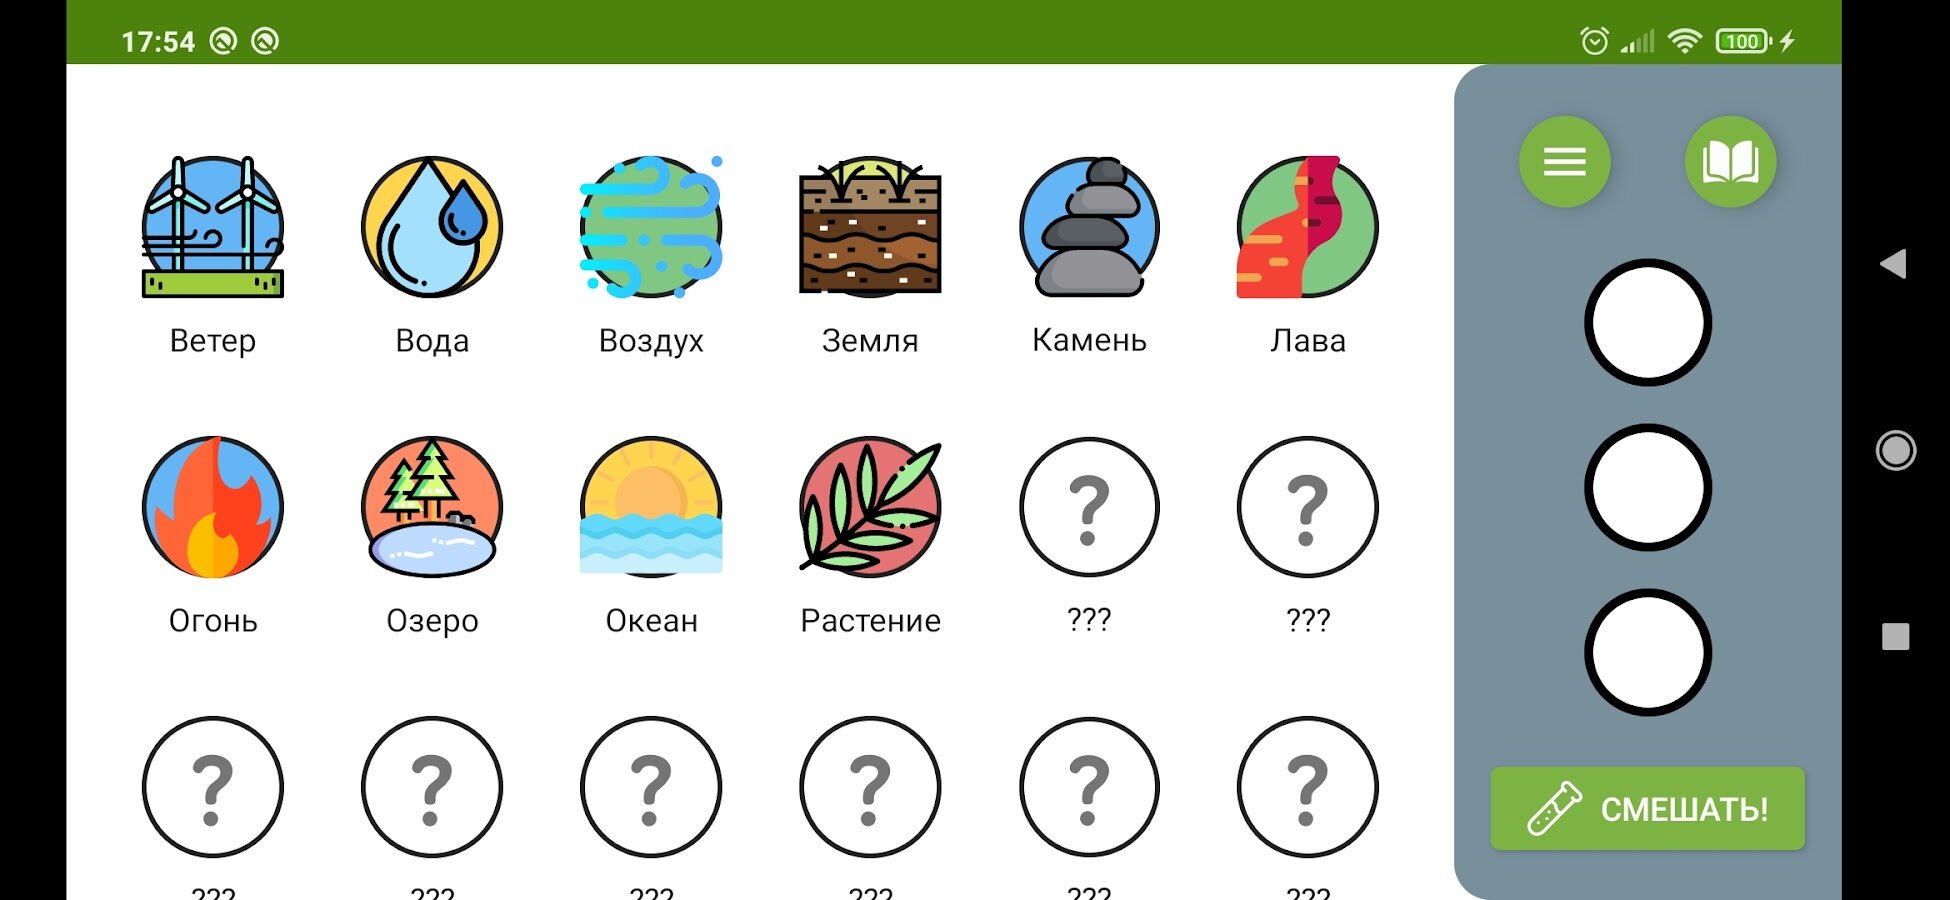 Скачать Алхимия – Смешивай И Открывай 2.0.95 Для Android